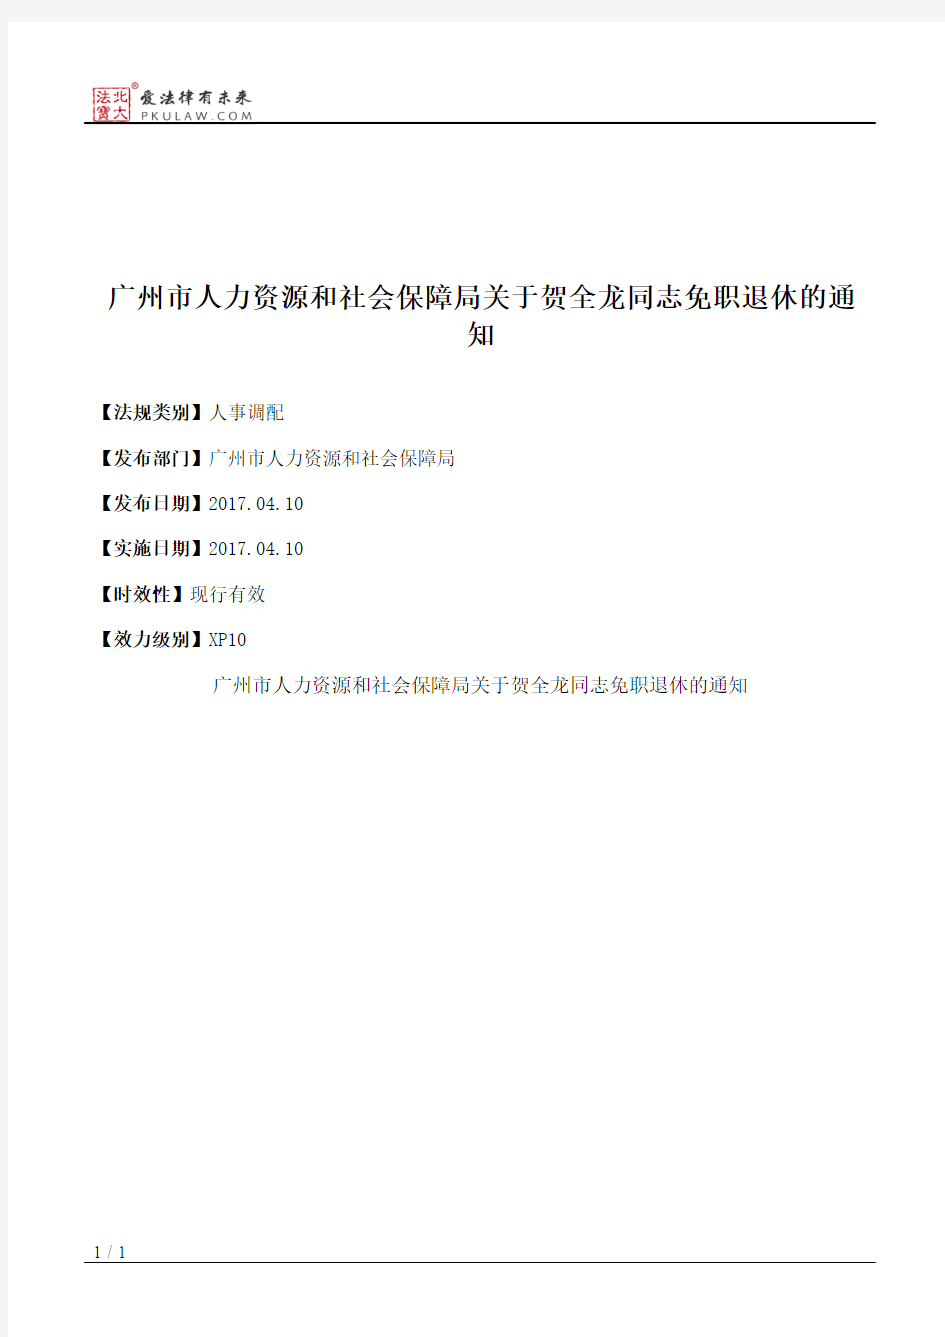 广州市人力资源和社会保障局关于贺全龙同志免职退休的通知